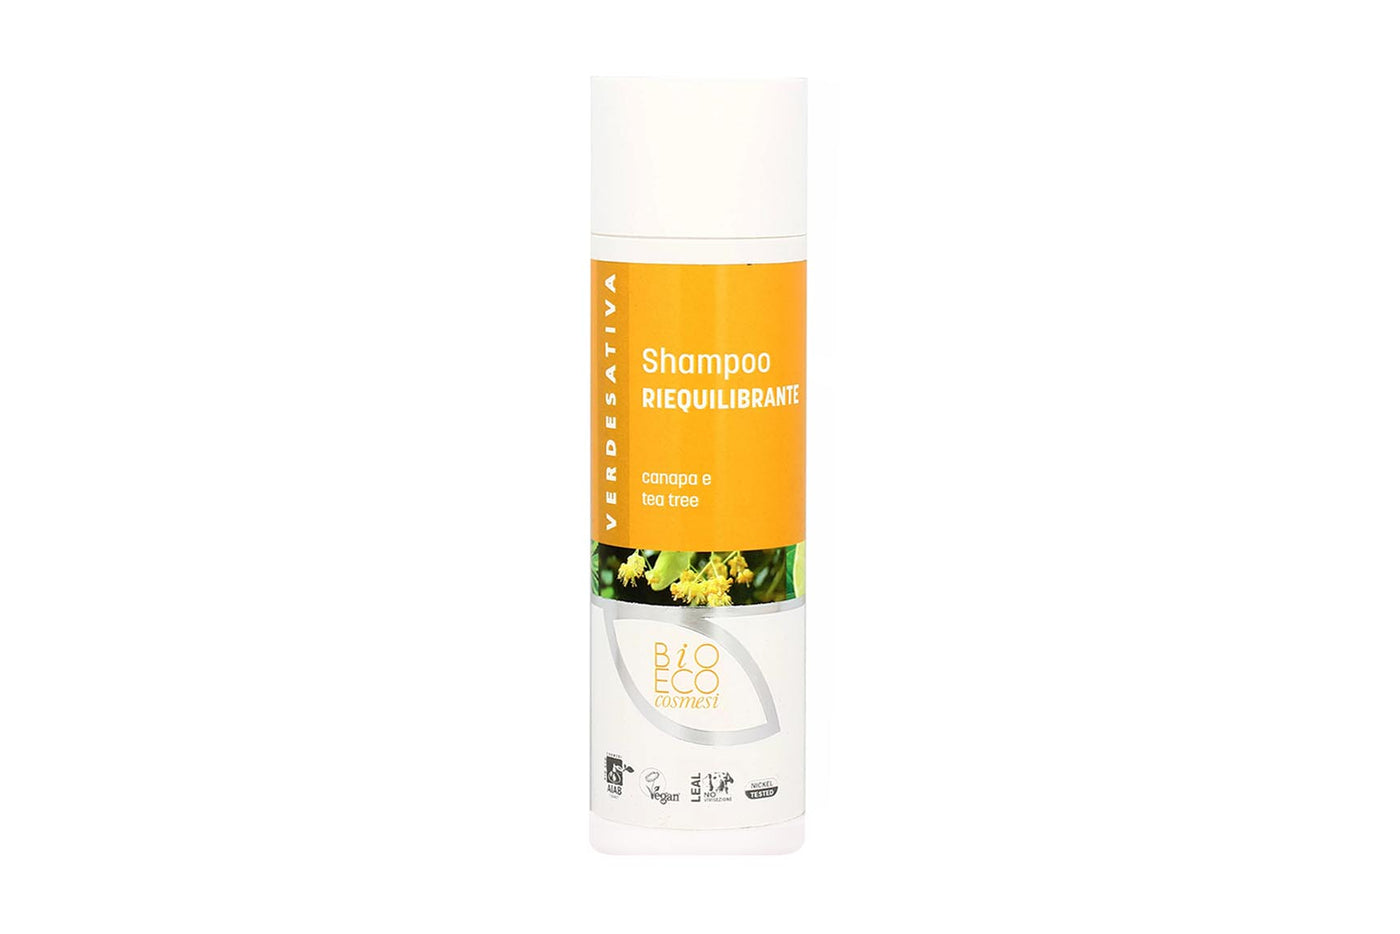 Shampoo Riequilibrante - 100% naturale e bio degradabile - Bongae